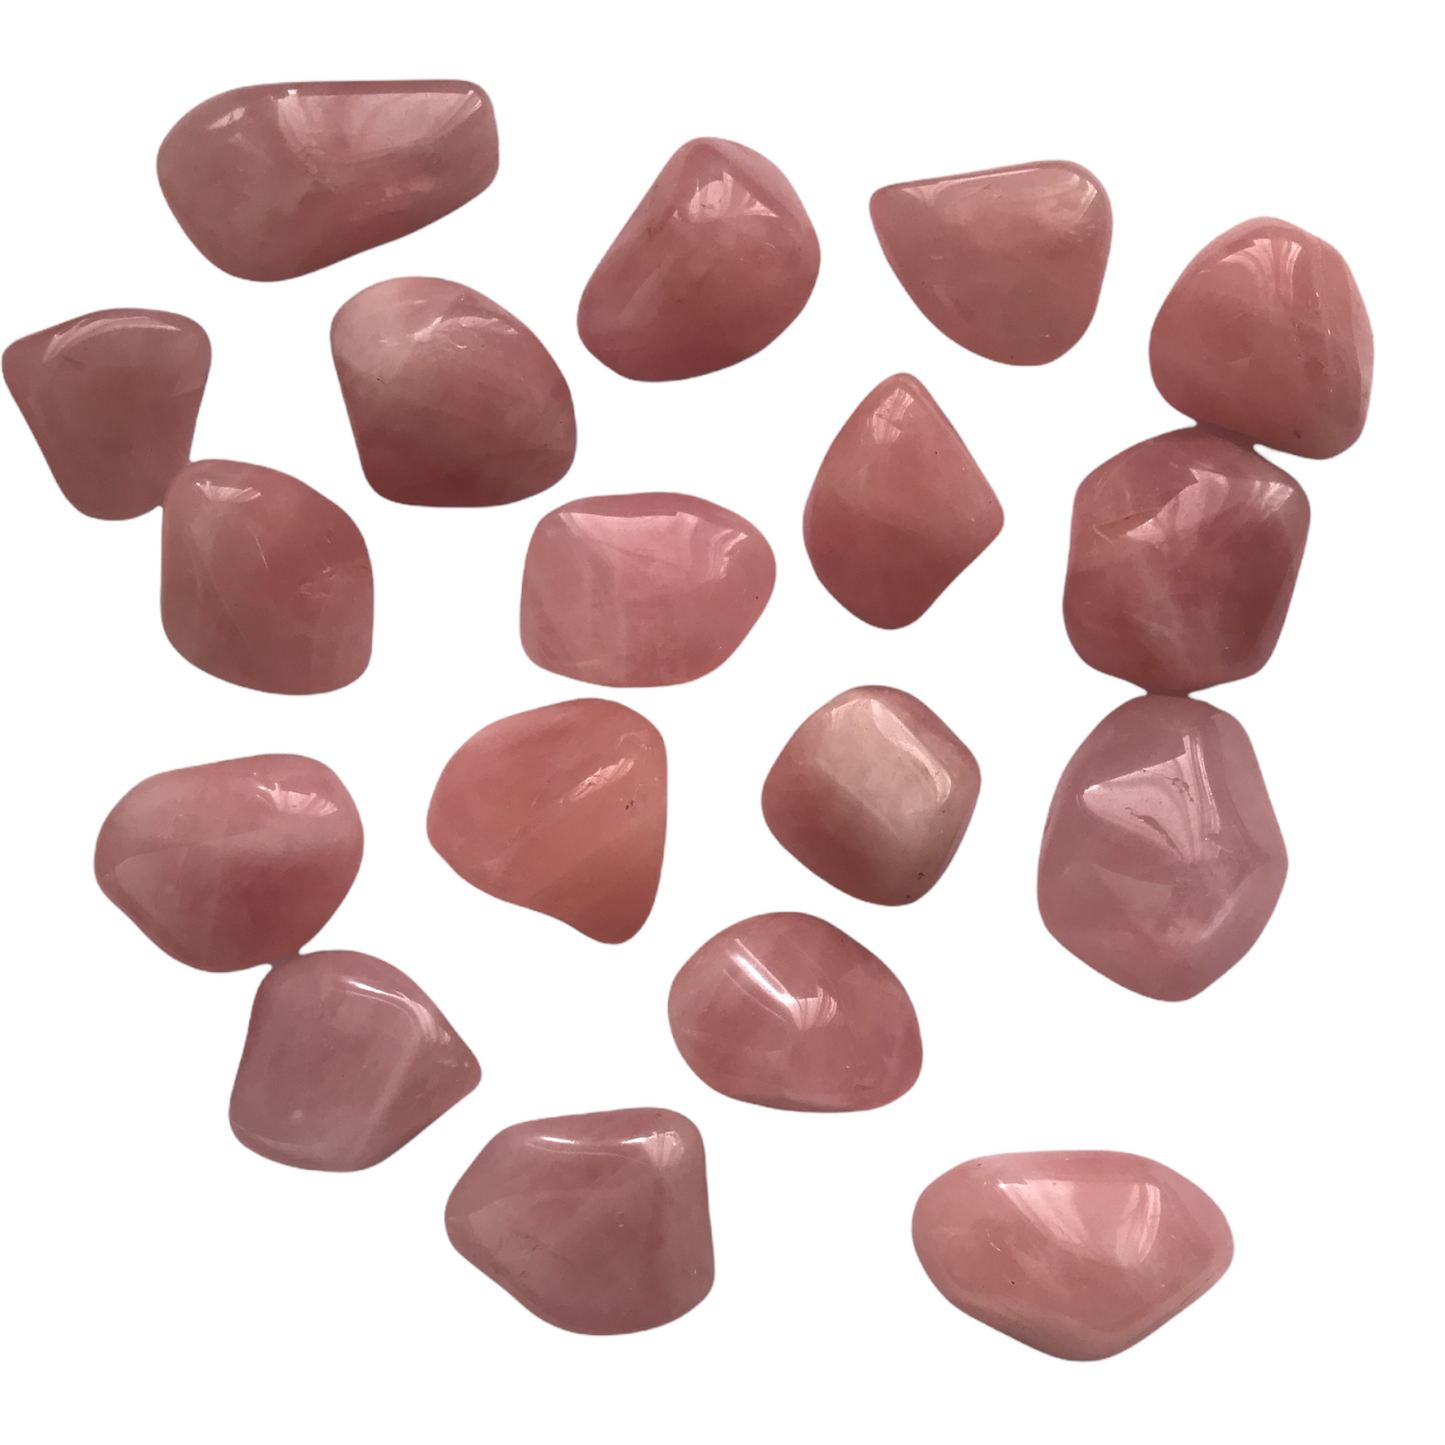 Rose Quartz tumble stone - Crystal Geological